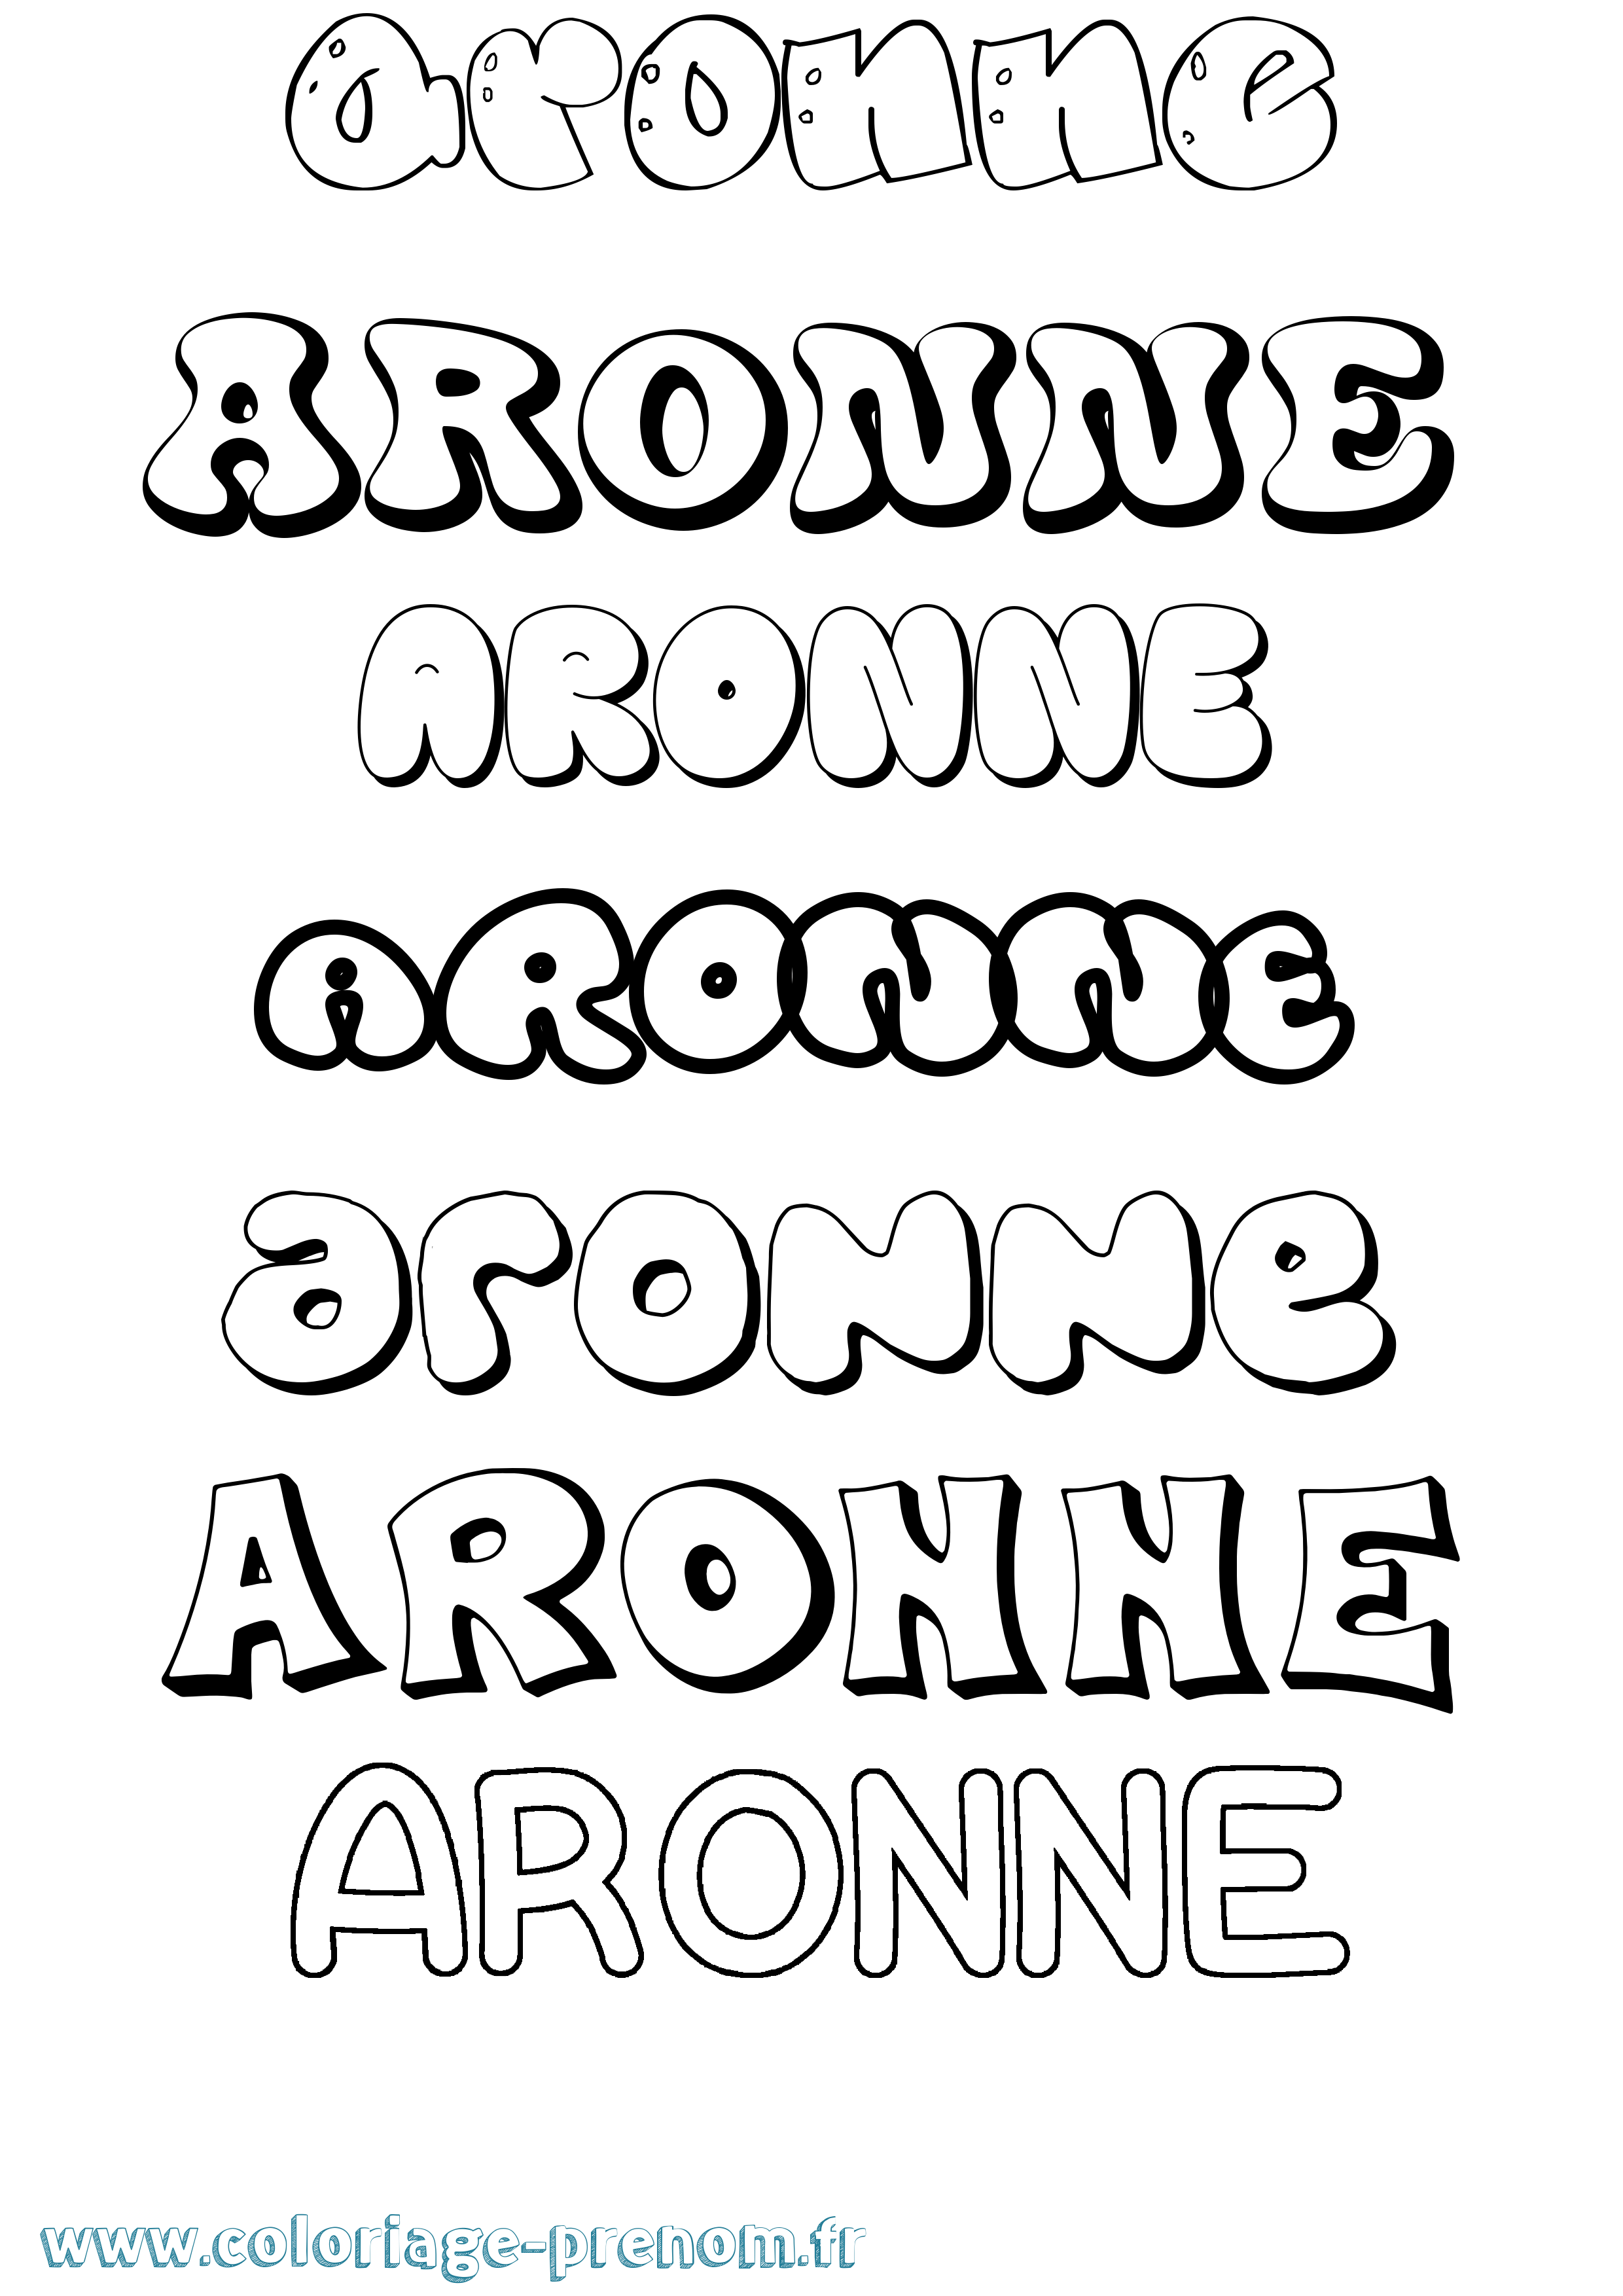 Coloriage prénom Aronne Bubble